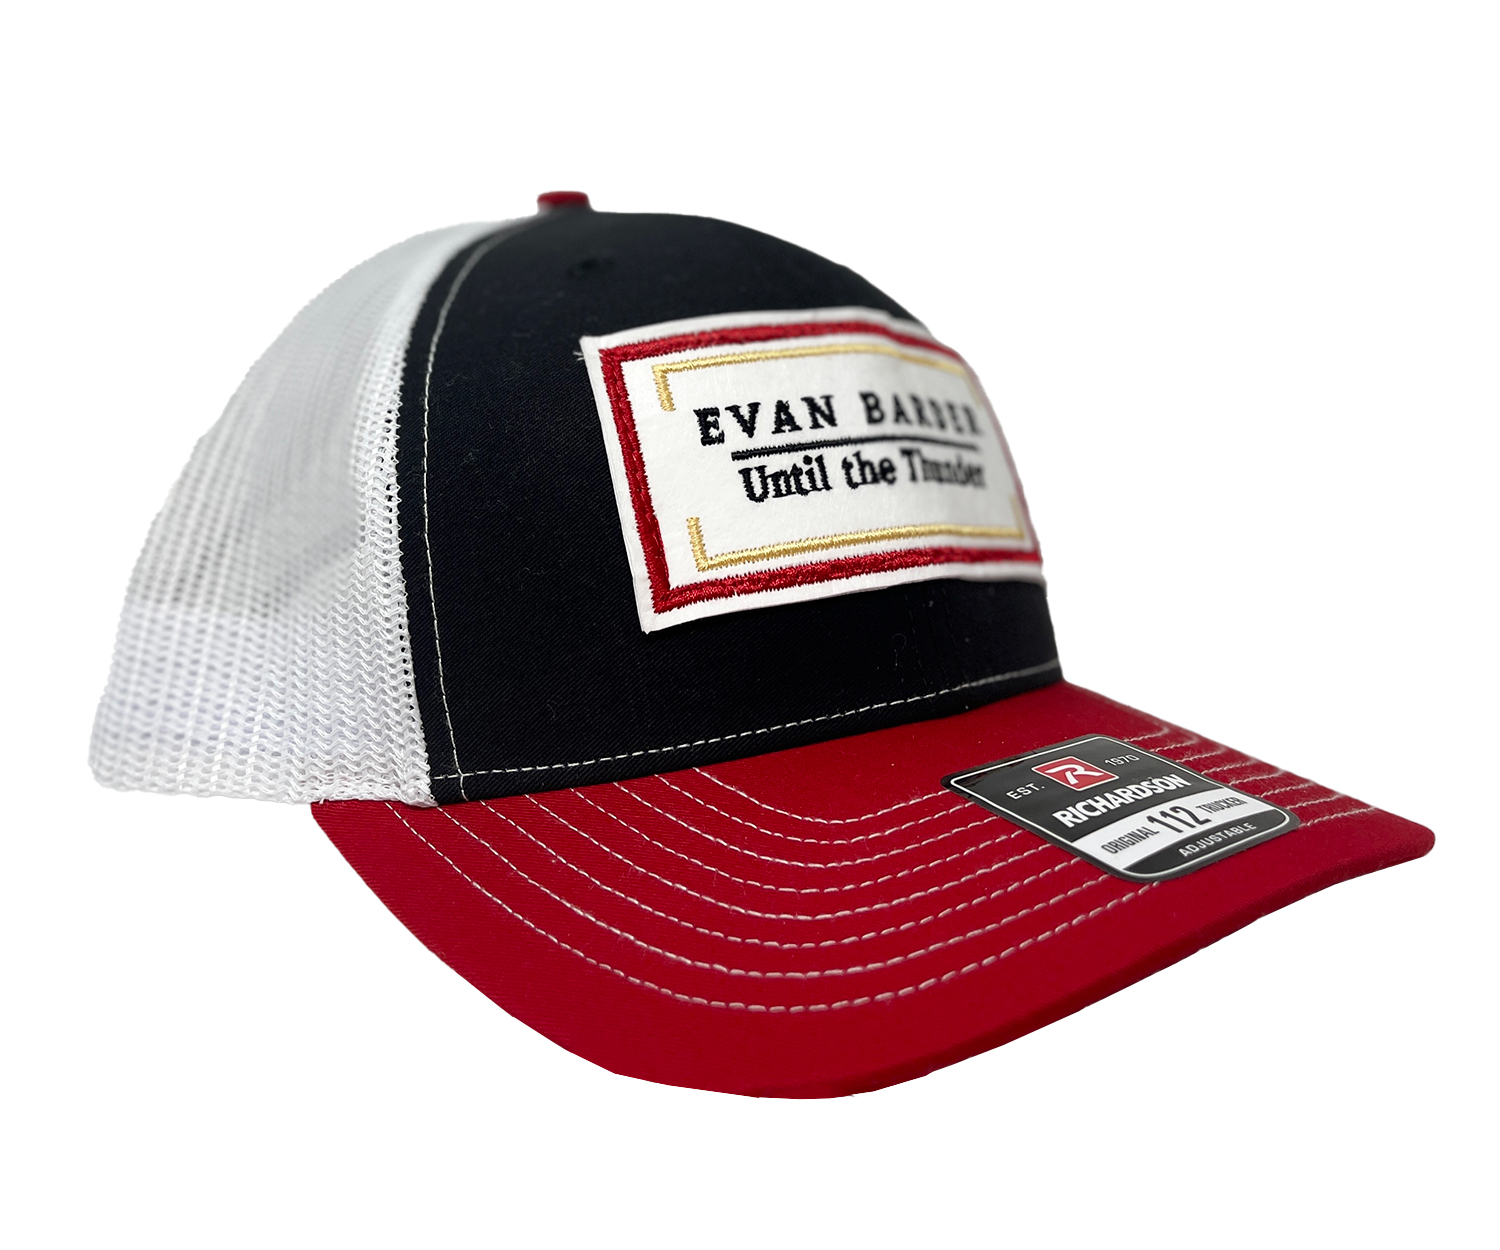 Until The Thunder Trucker Hat - Evan Barber